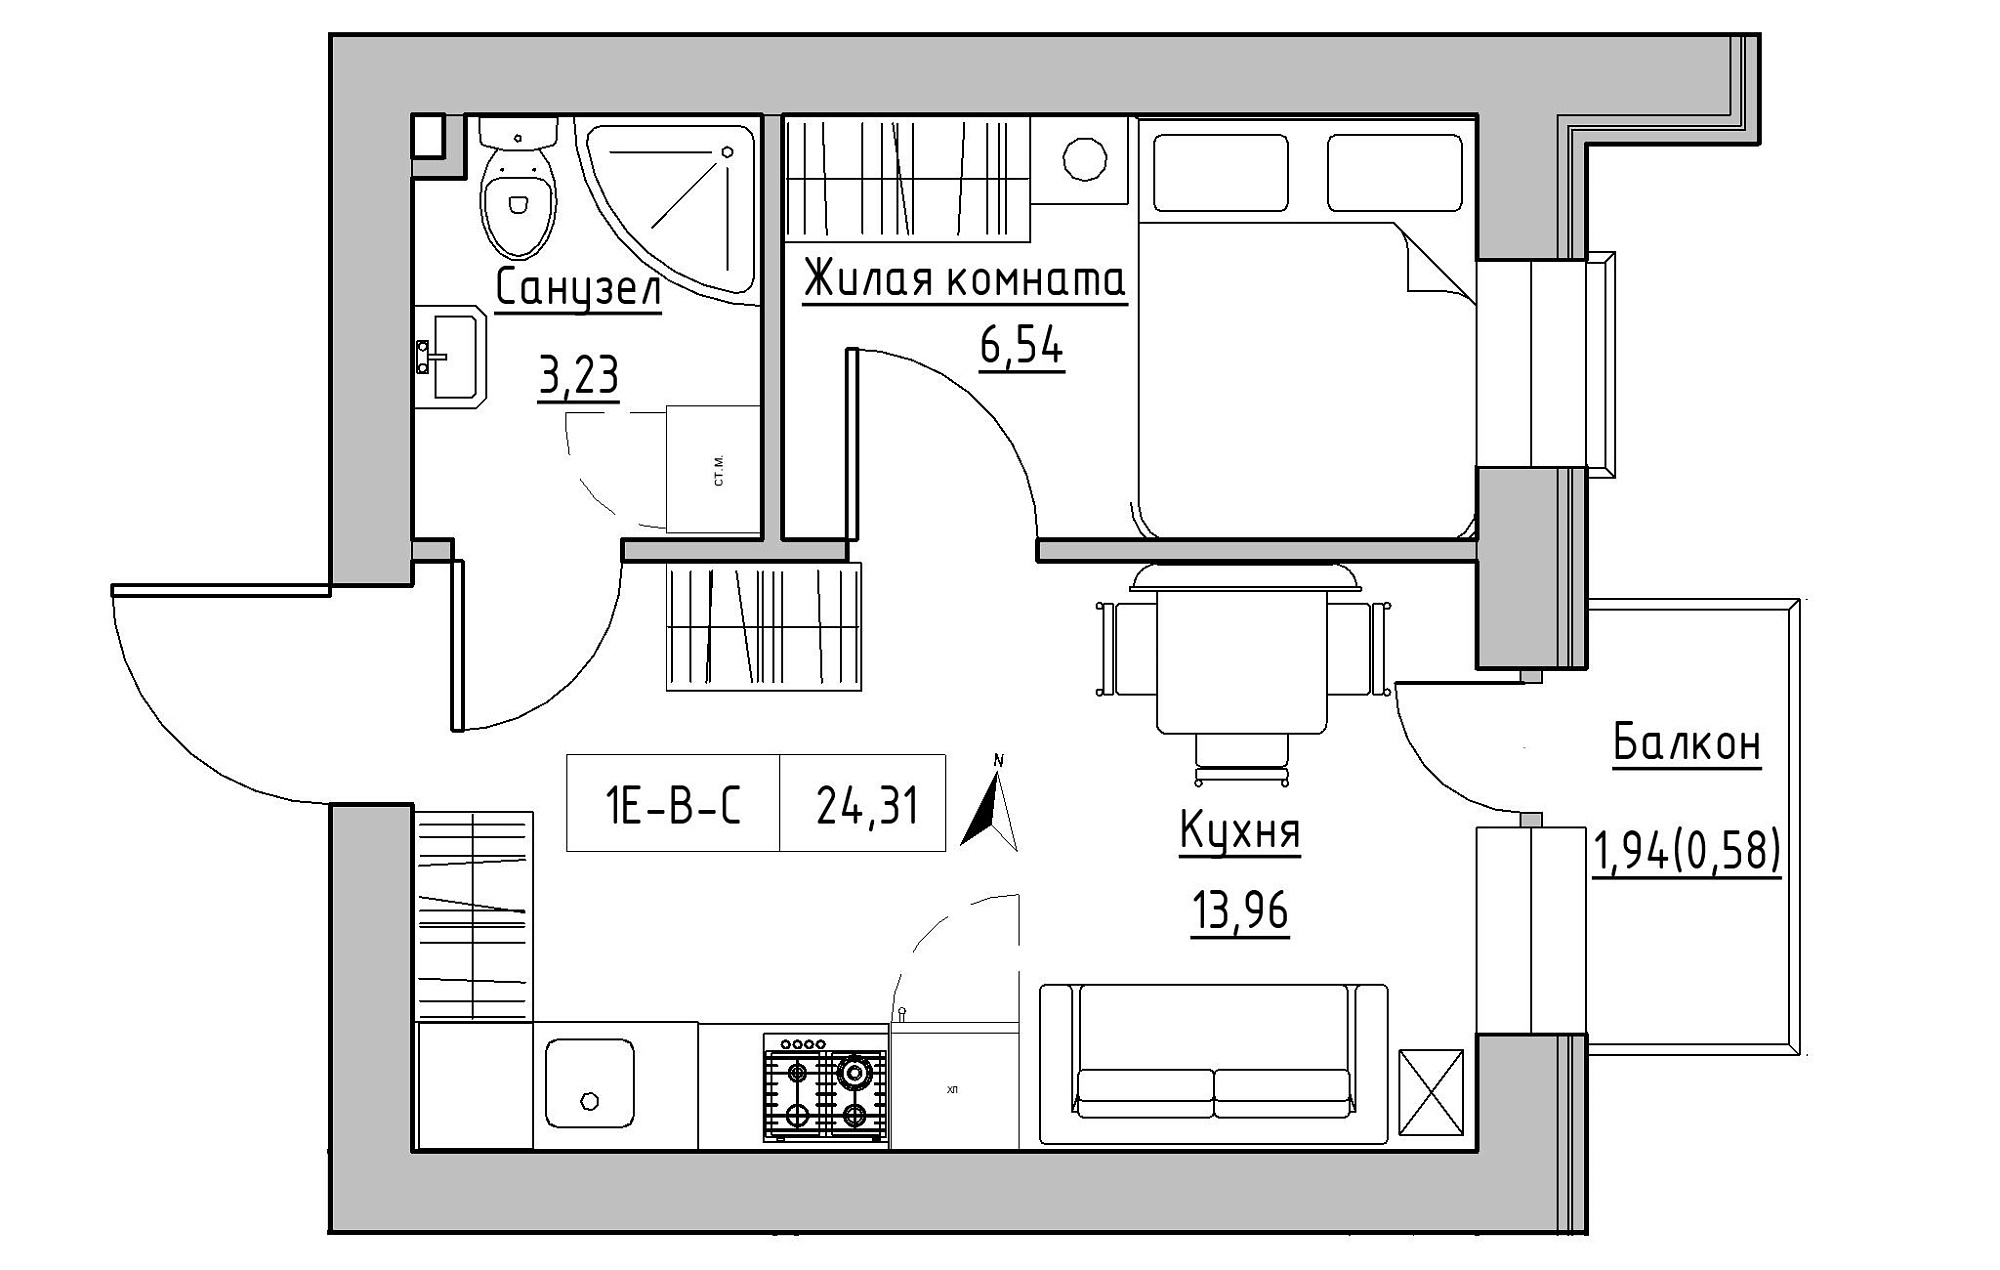 Планування 1-к квартира площею 24.31м2, KS-019-03/0007.